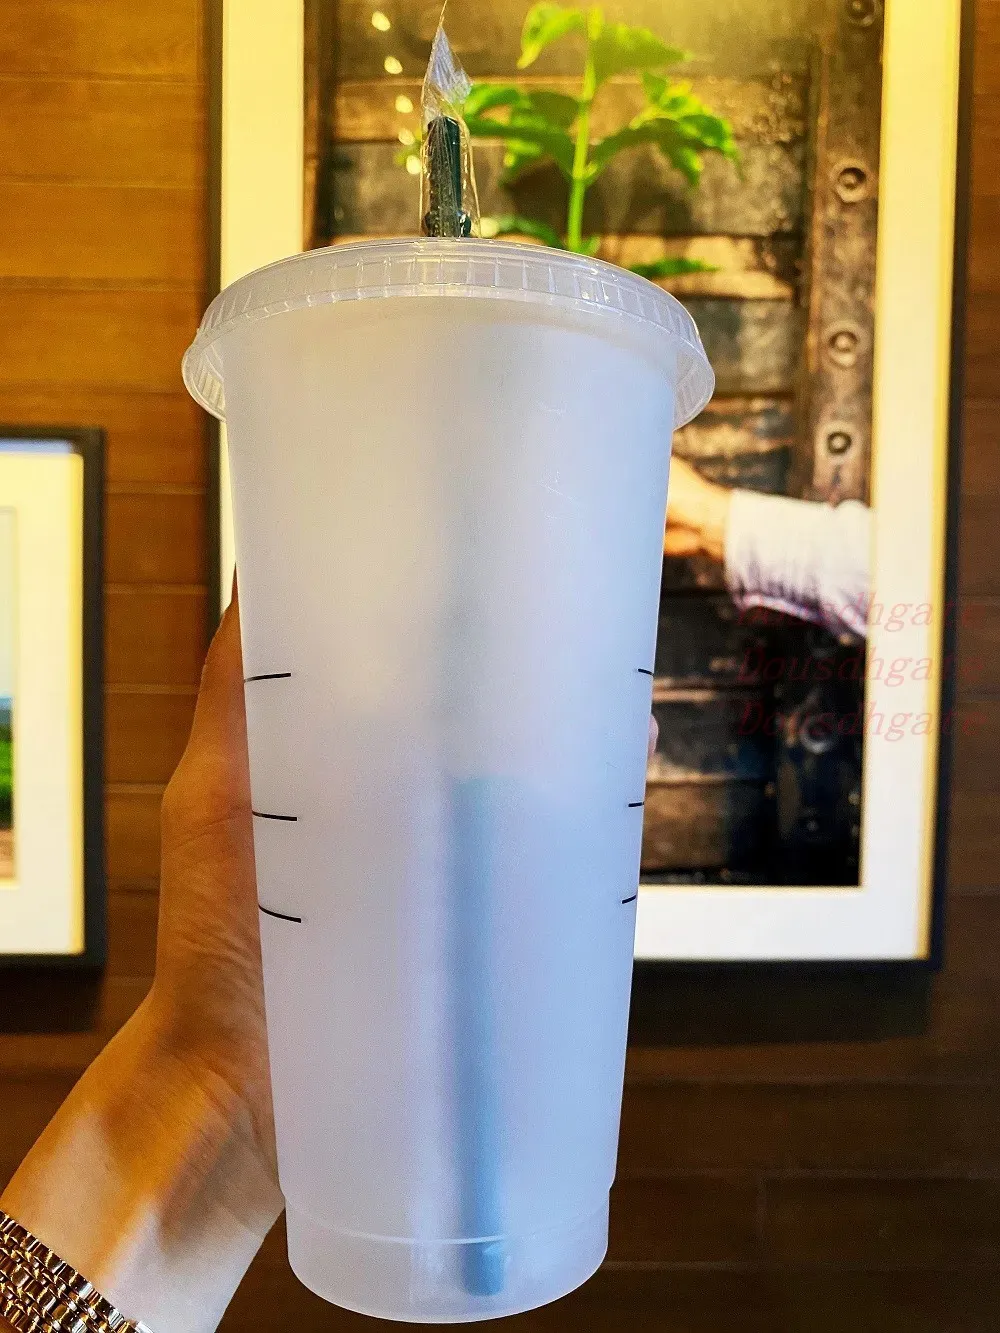 Diosa sirena 24 oz/710 ml tazas de plástico vaso reutilizable claro beber fondo plano forma de pilar tapa tazas con pajita taza